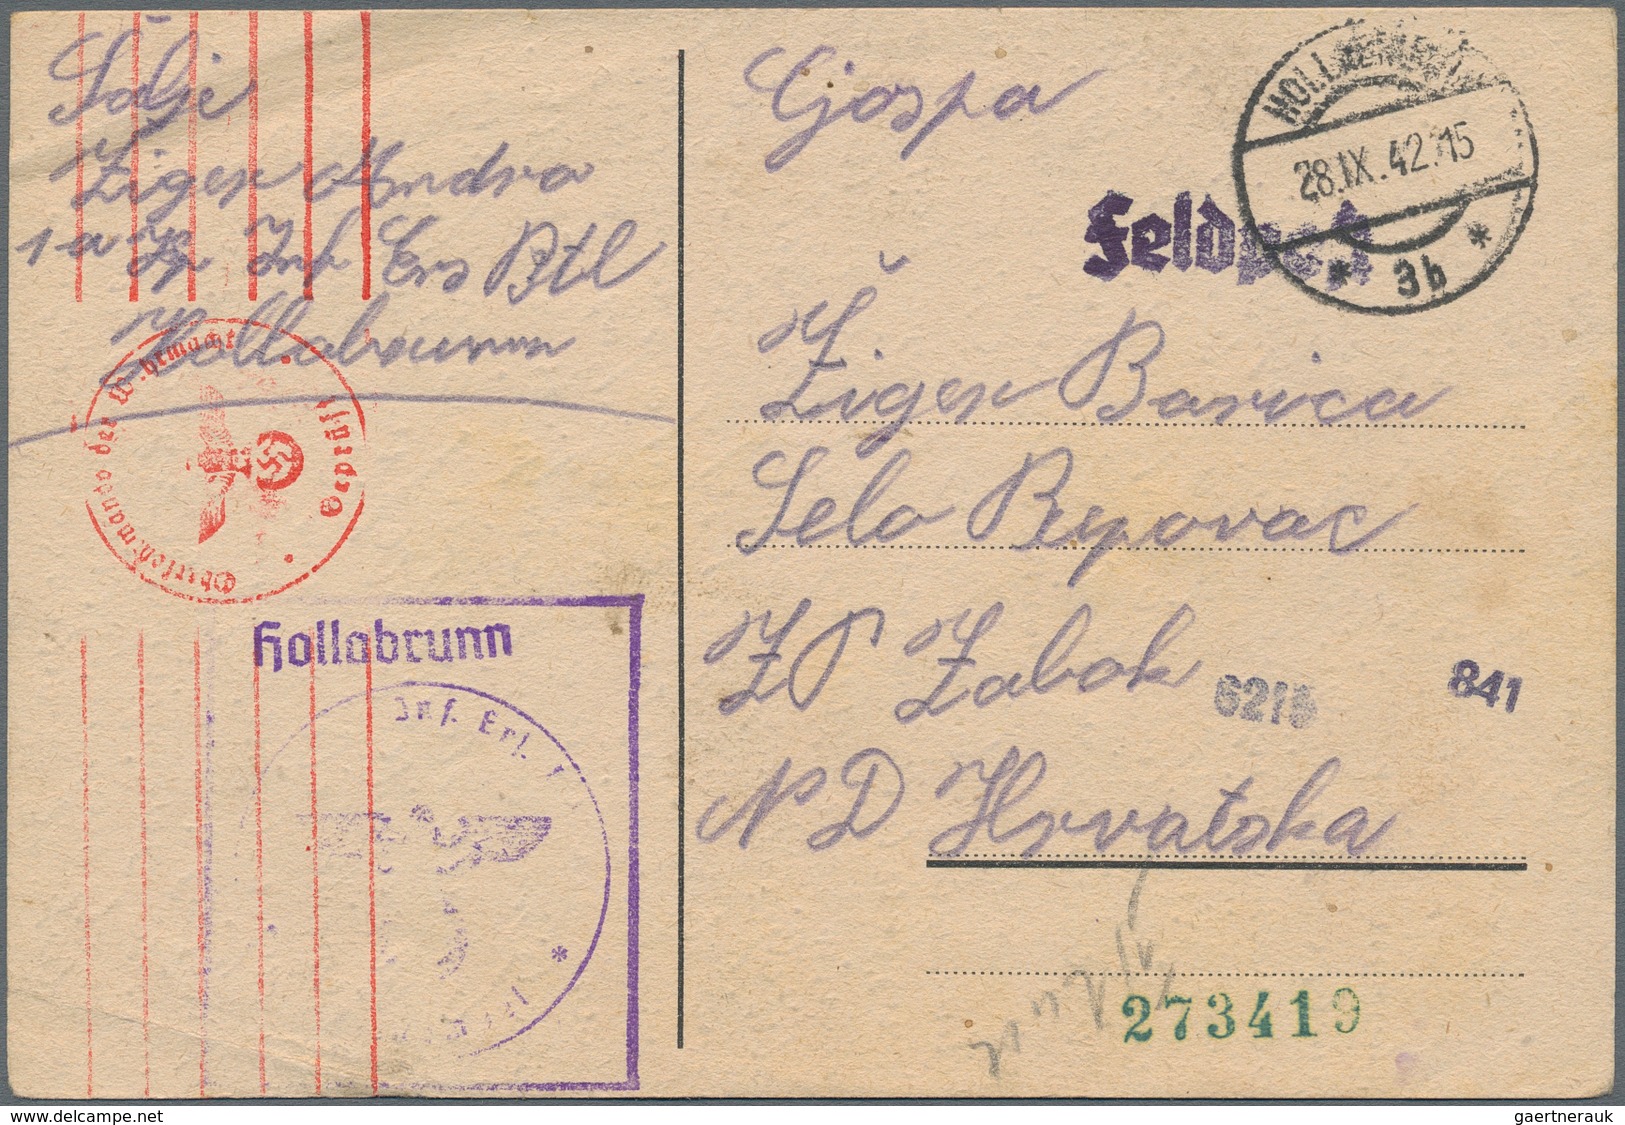 Kroatien - Besonderheiten: Croatian WWII Volunteer Feldpost Collection. Extraordinary Collection Of - Kroatien